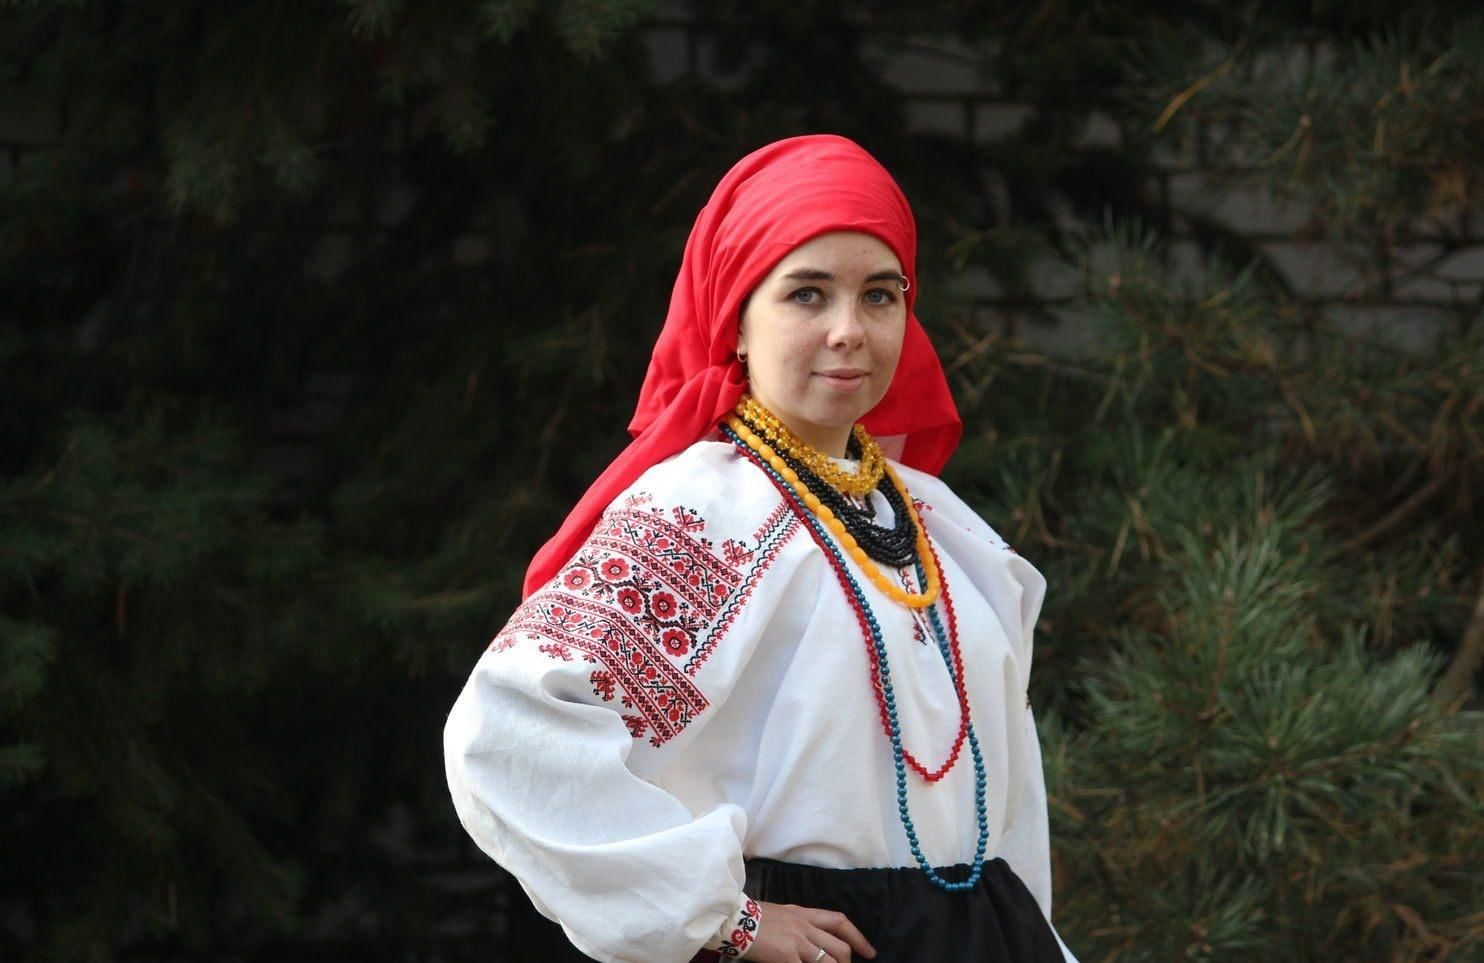 Воронежский народный костюм